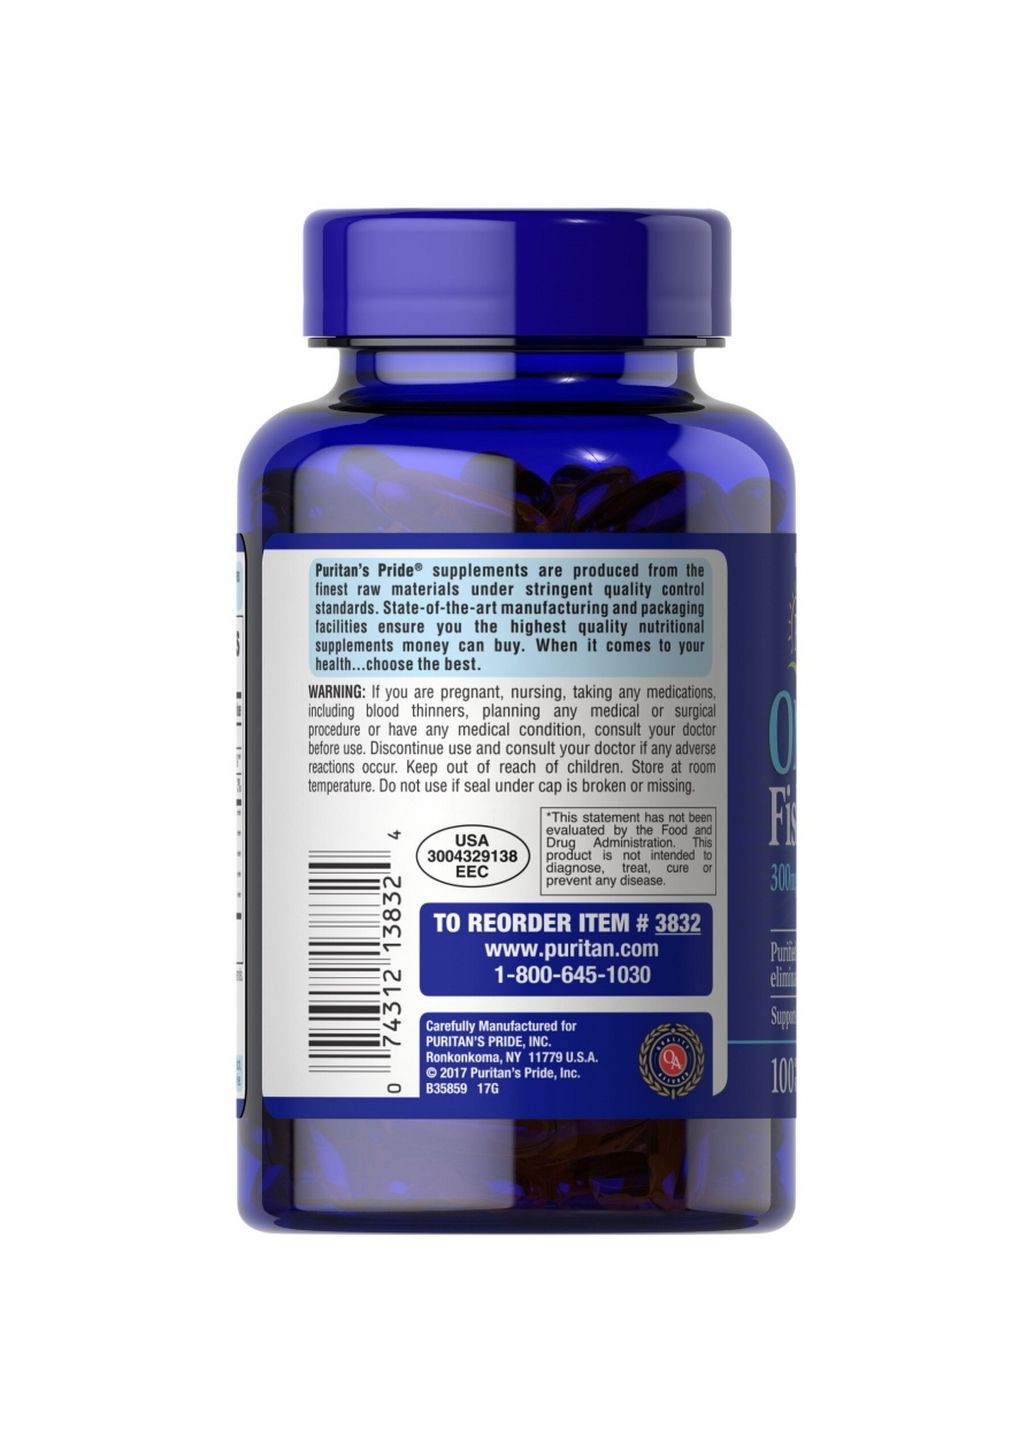 Жирные кислоты Omega 3 Fish Oil 1000 mg, 100 капсул Puritans Pride (293477772)